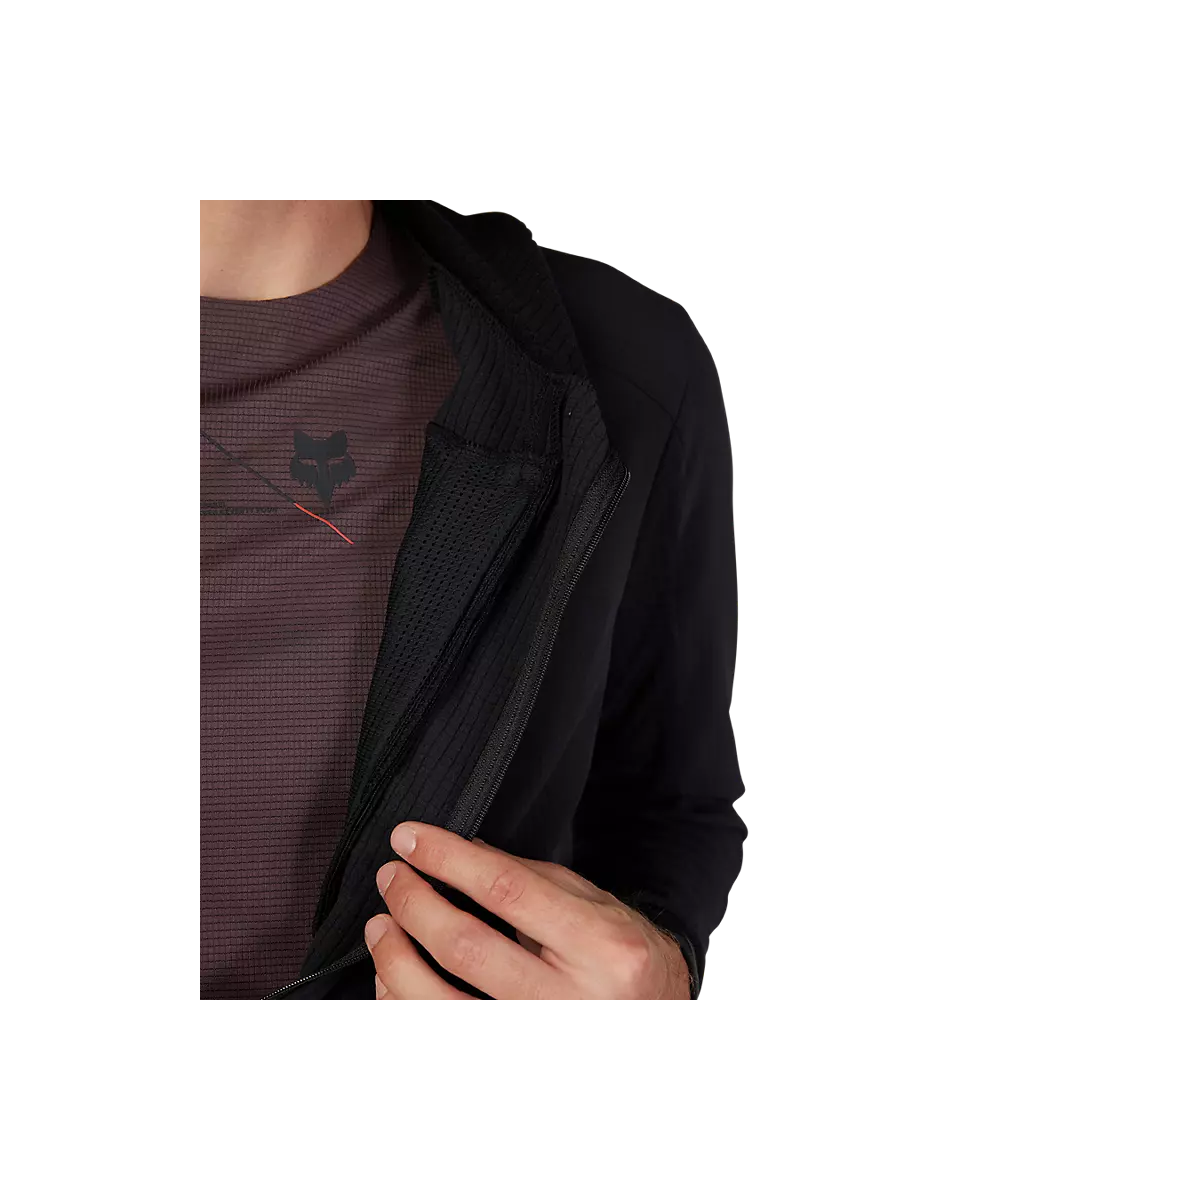 Camiseta / Sudadera técnica con capucha Fox Defend Thermal invierno 31480-001 color negro paravientos